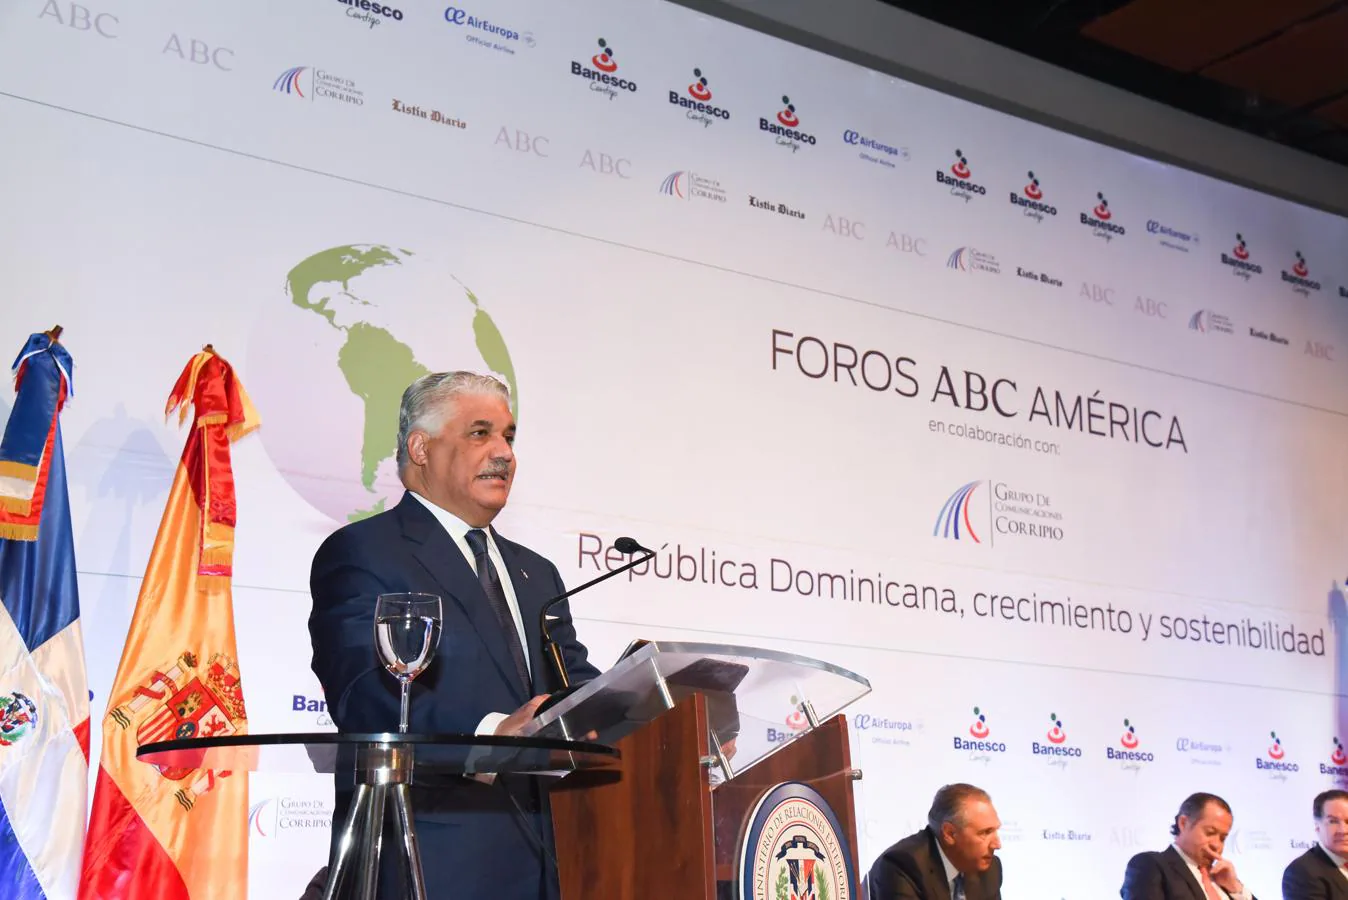 Foros ABC América. Miguel Vargas, ministro de Relaciones Exteriores, durante su intervención este miércoles en los Foros ABC América celebrados en República Dominicana.